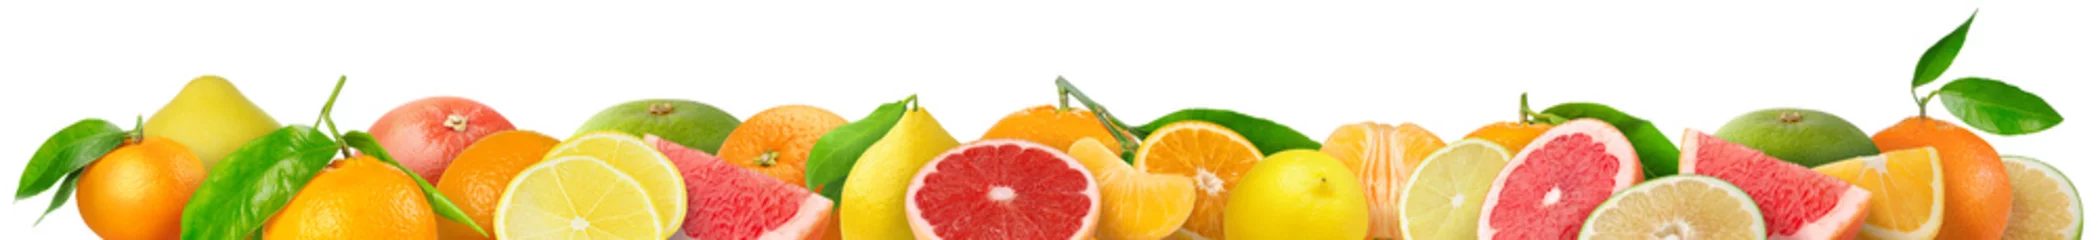 Fotobehang Gemengde citrusvruchten grens. Stapel sinaasappel, citroen, mandarijn, grapefruit en andere citrusvruchten in horizontale samenstelling geïsoleerd op witte achtergrond © ChaoticDesignStudio